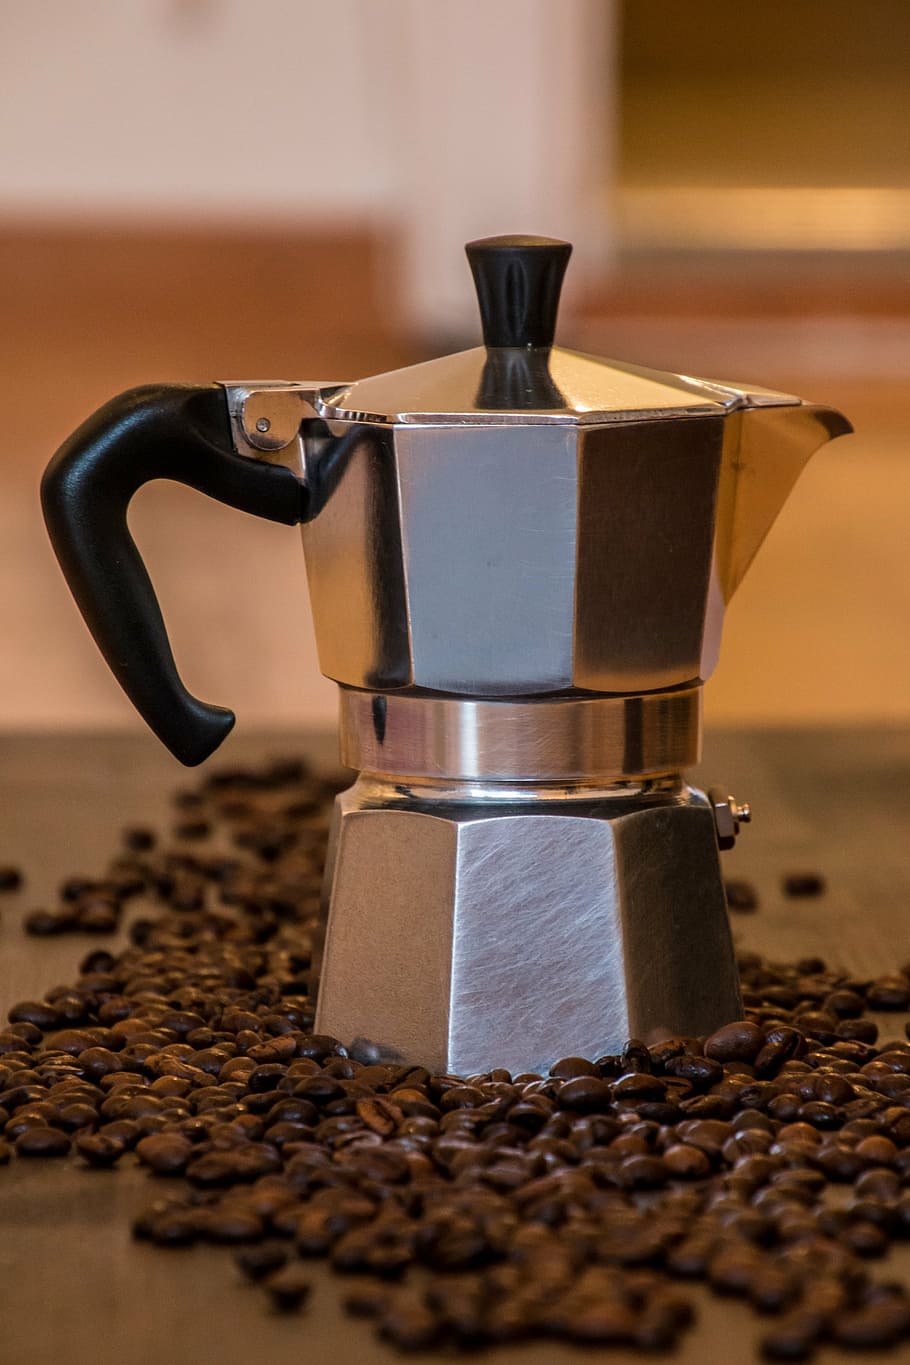 cafeteira de prata, café, chá, cafeteira velha, máquina de café italiana antiga, fazer café, itália, café da manhã, hora do café, preparar café